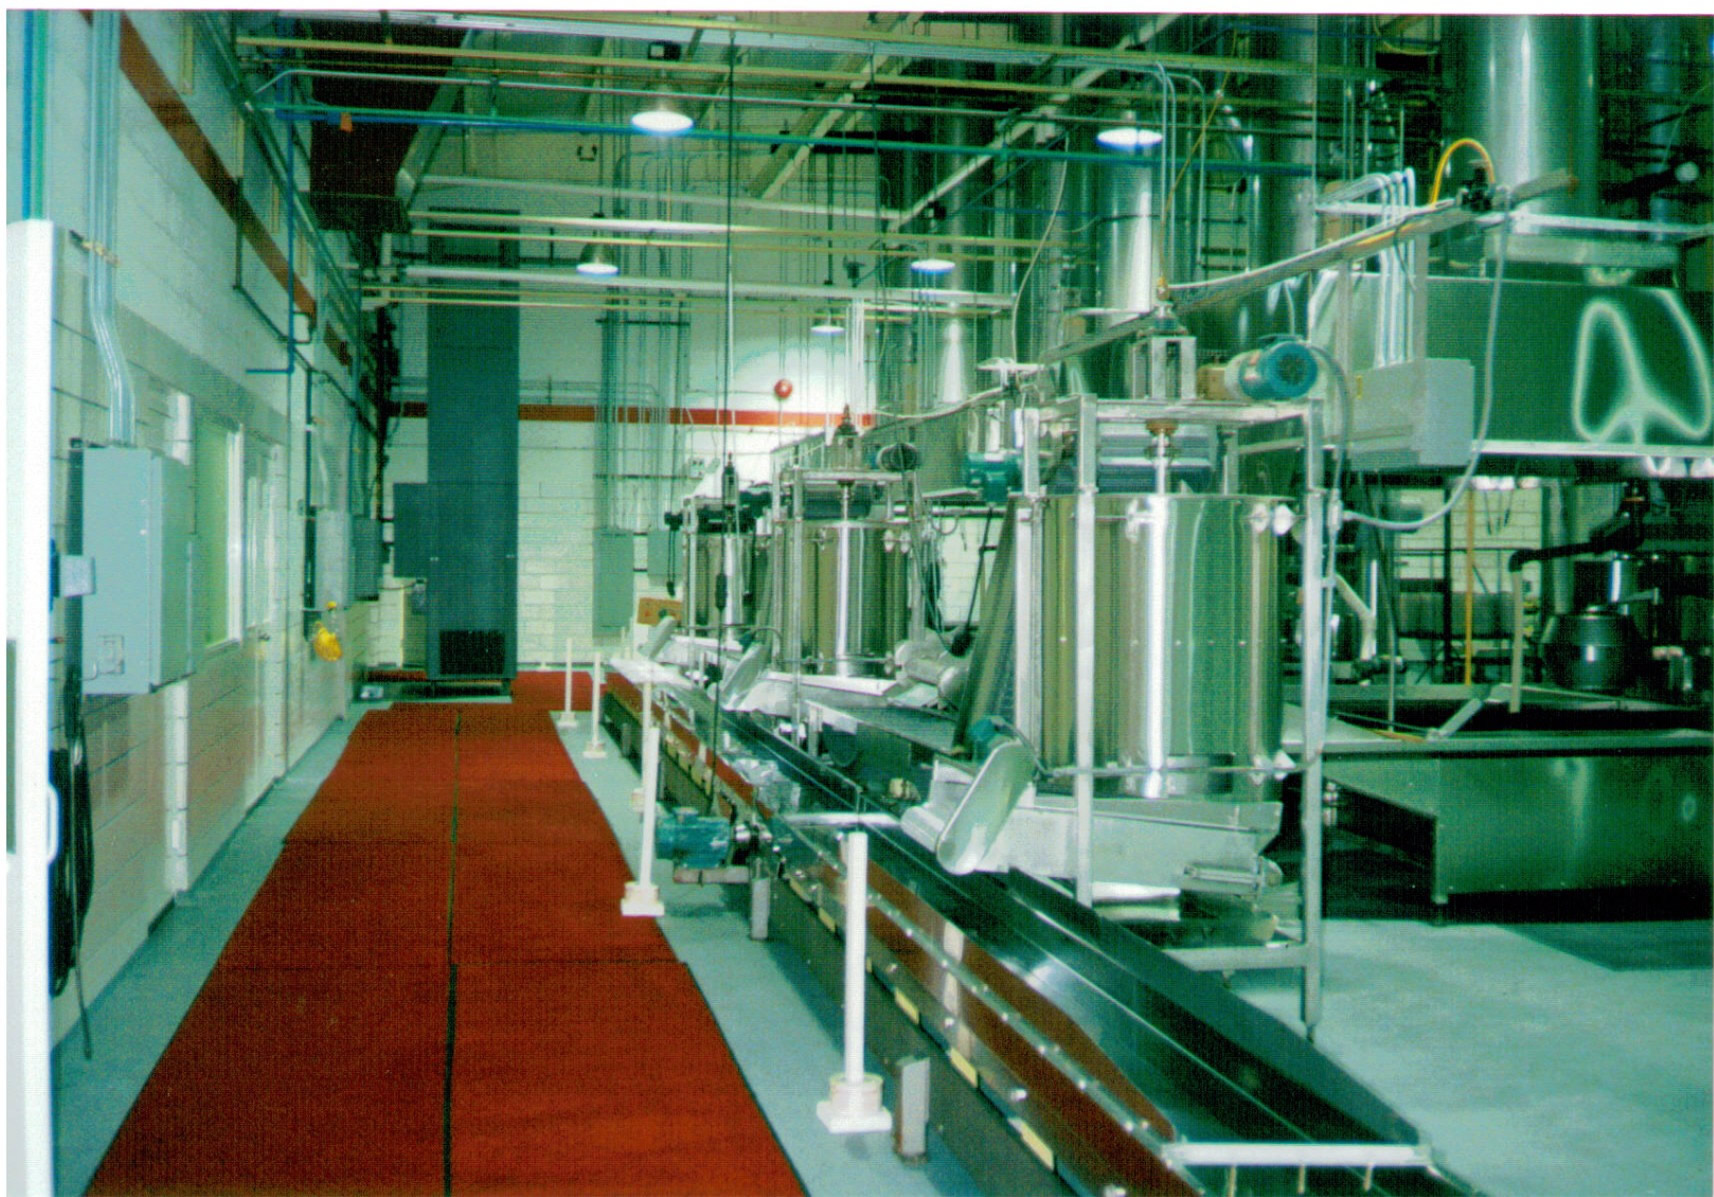 Martin's Potato Chip Company Plant Interior in 1990